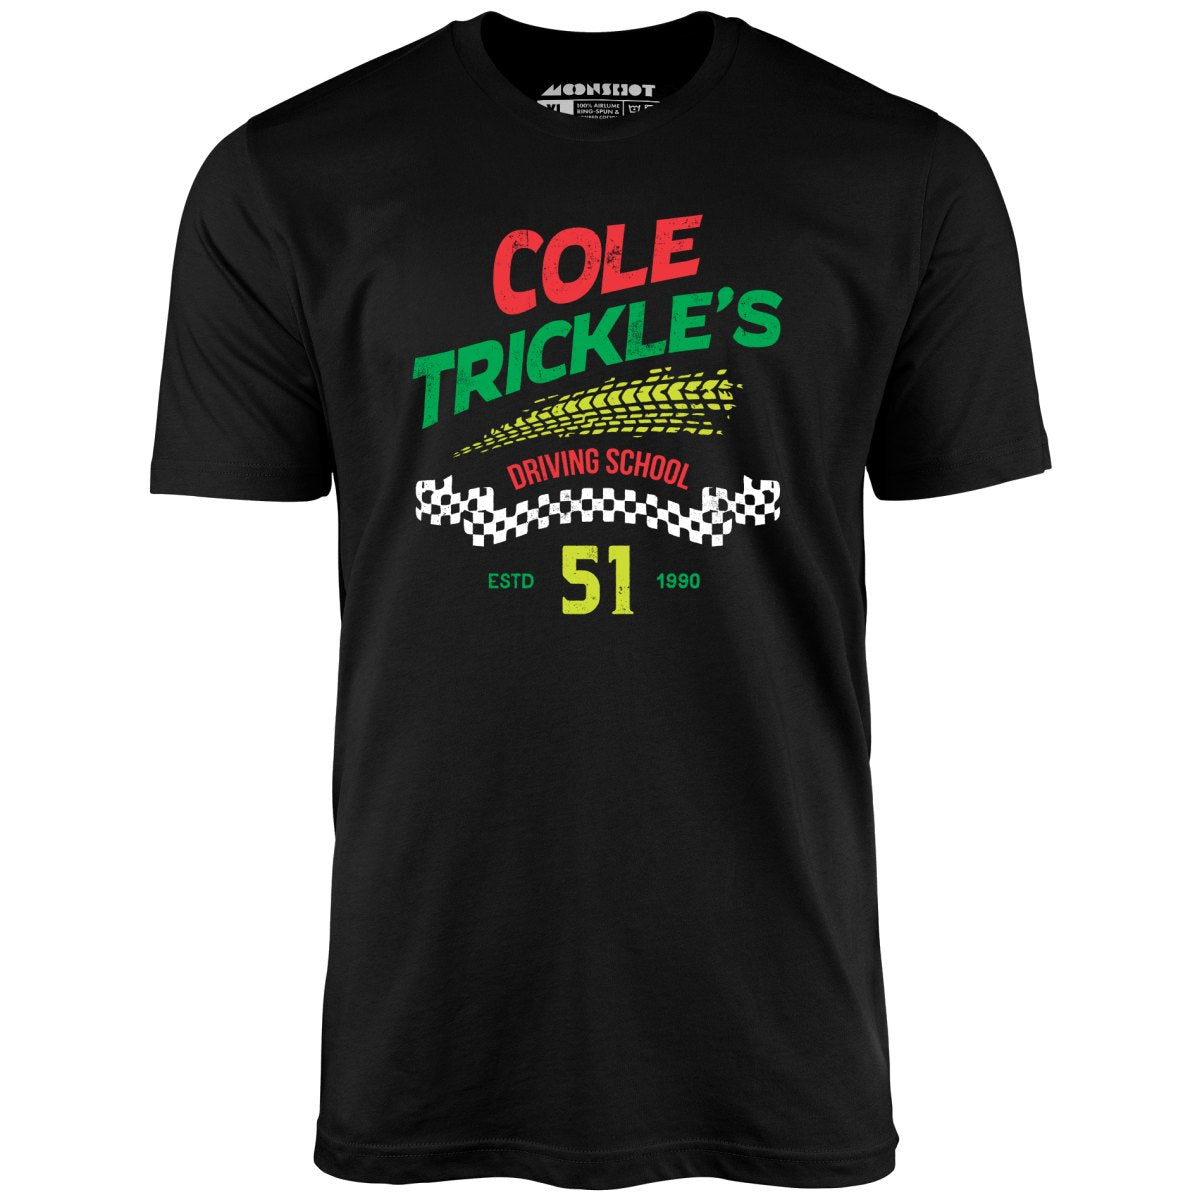 Cole Trickle's Driving School - Unisex T-Shirt